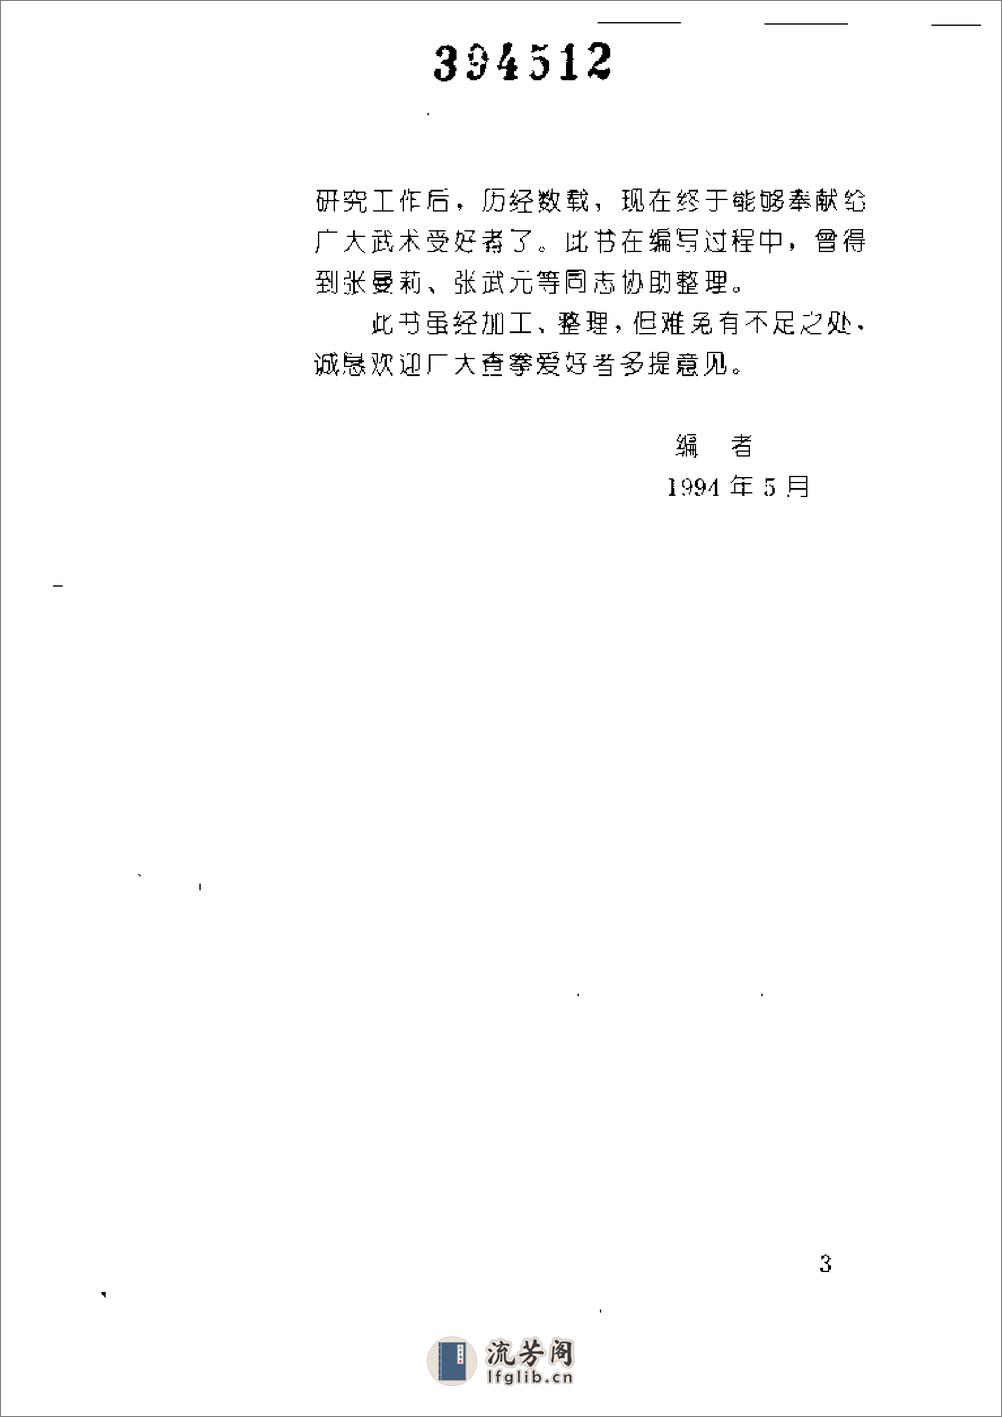 《中国查拳典型器械套路》张文广 - 第11页预览图